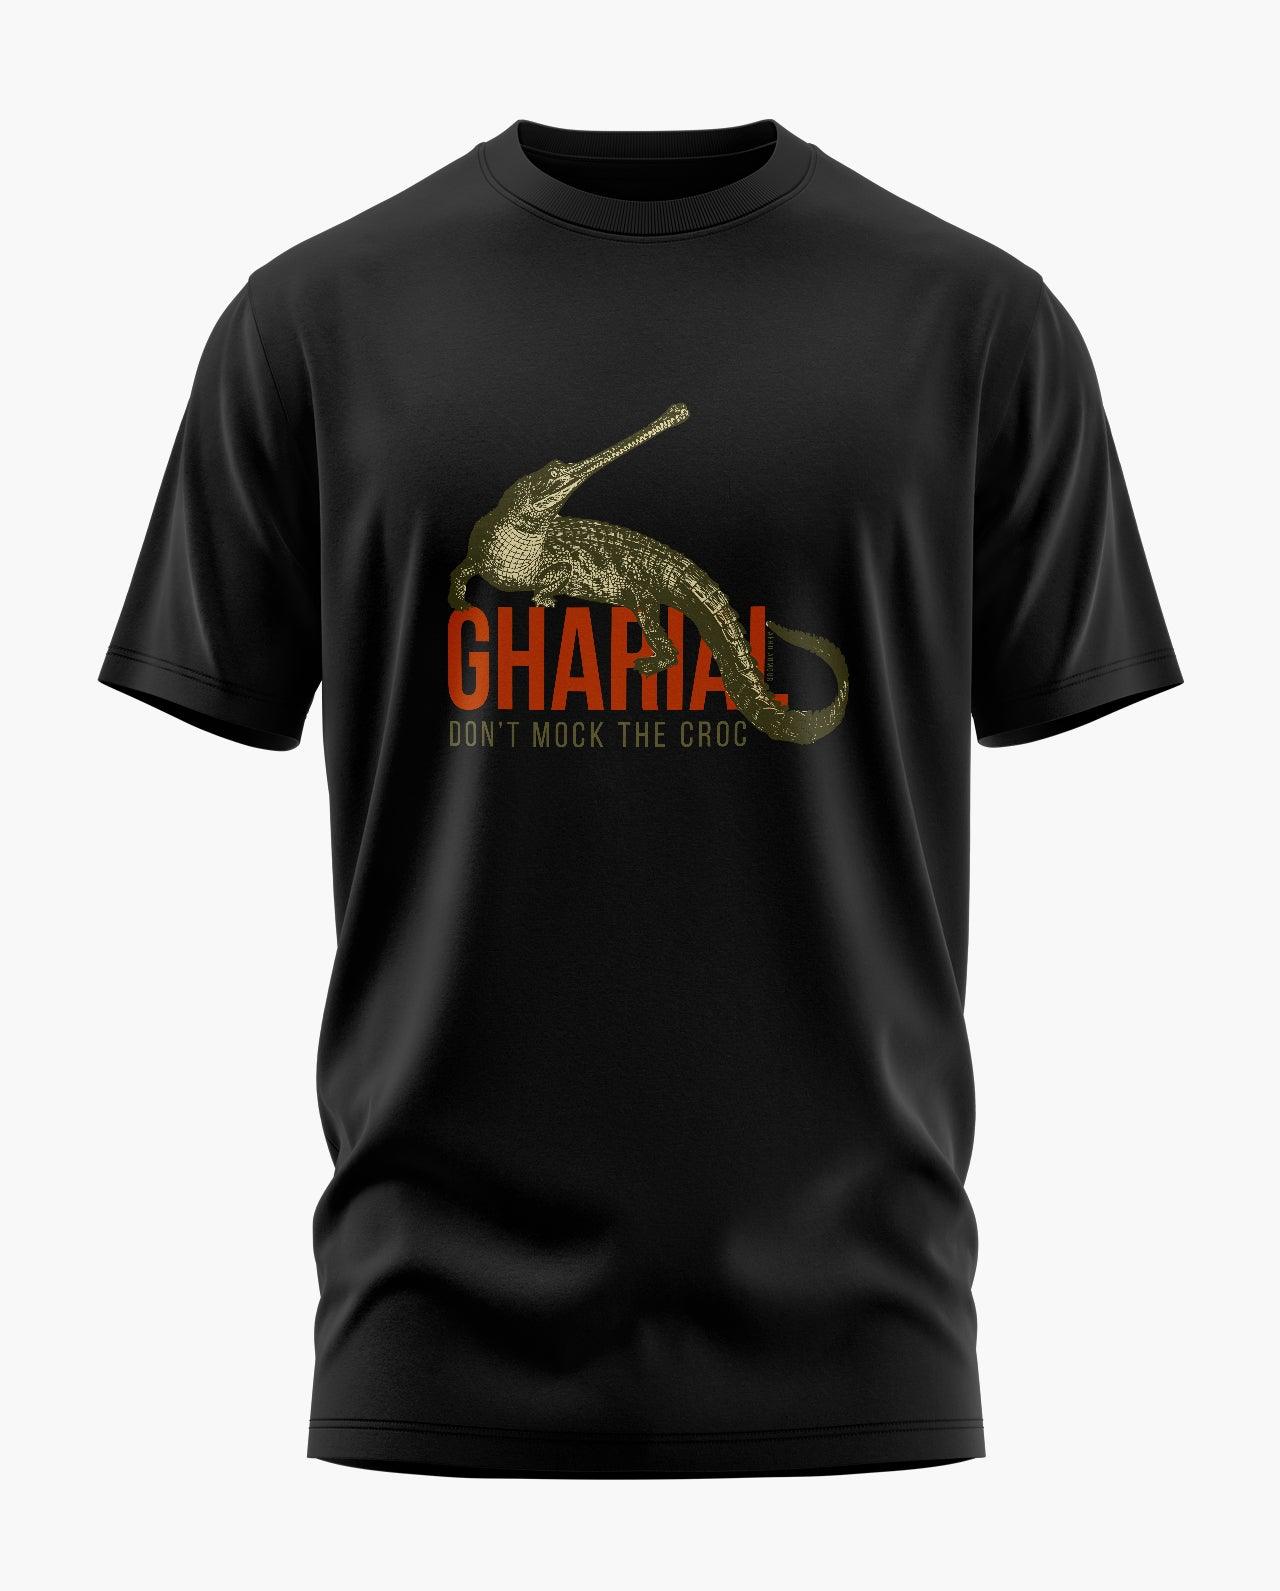 Gharial T-Shirt - Aero Armour